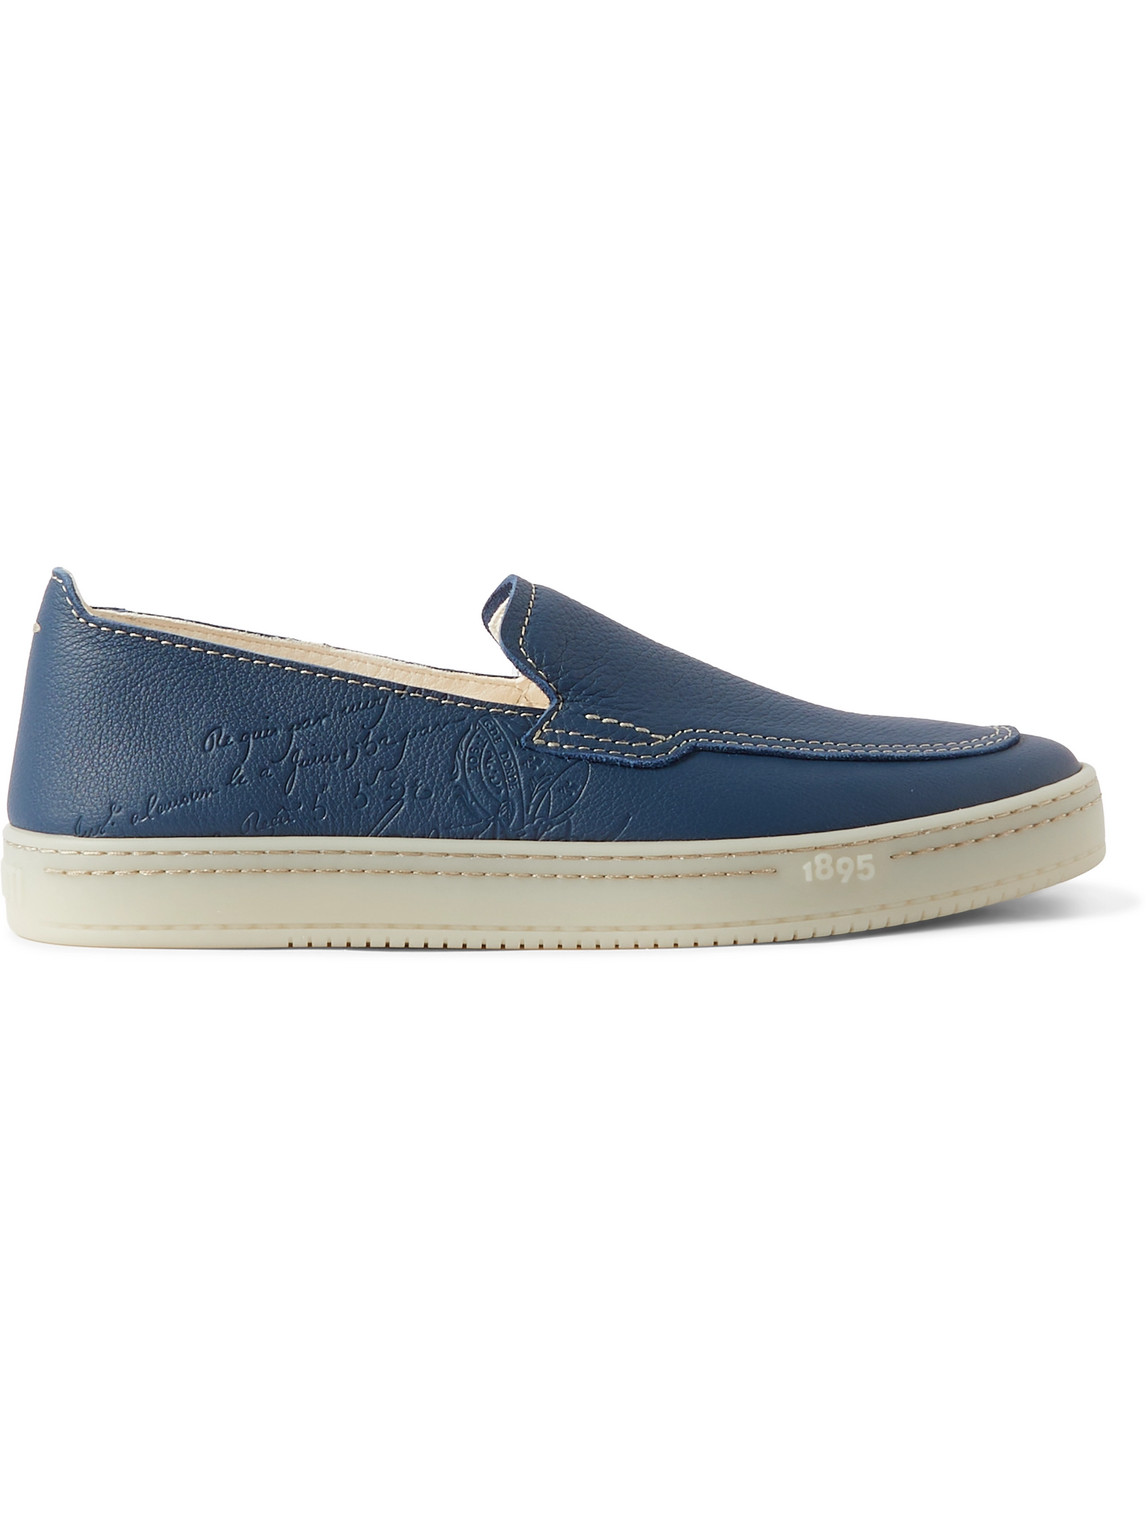 Berluti - Eden Scritto Full-Grain Leather Loafers - Men - Blue - UK 8 von Berluti